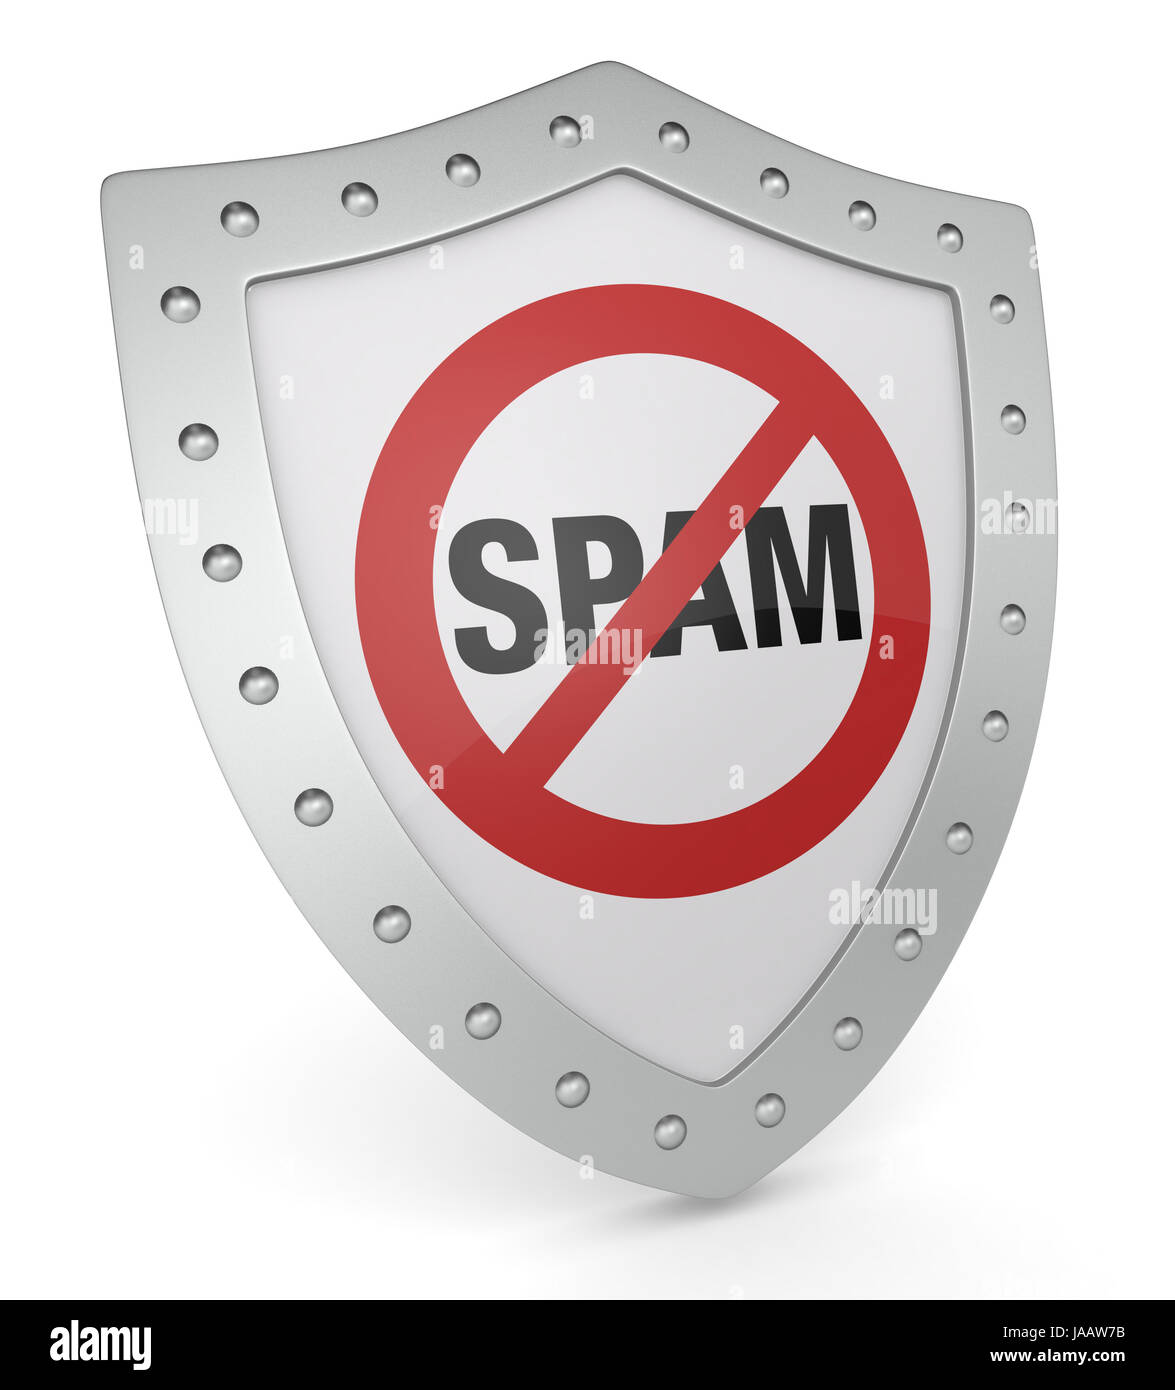 Защита от мошенников и спама. Защита от спама. Антиспам защита. Методы защиты от спама. Антиспам щит.